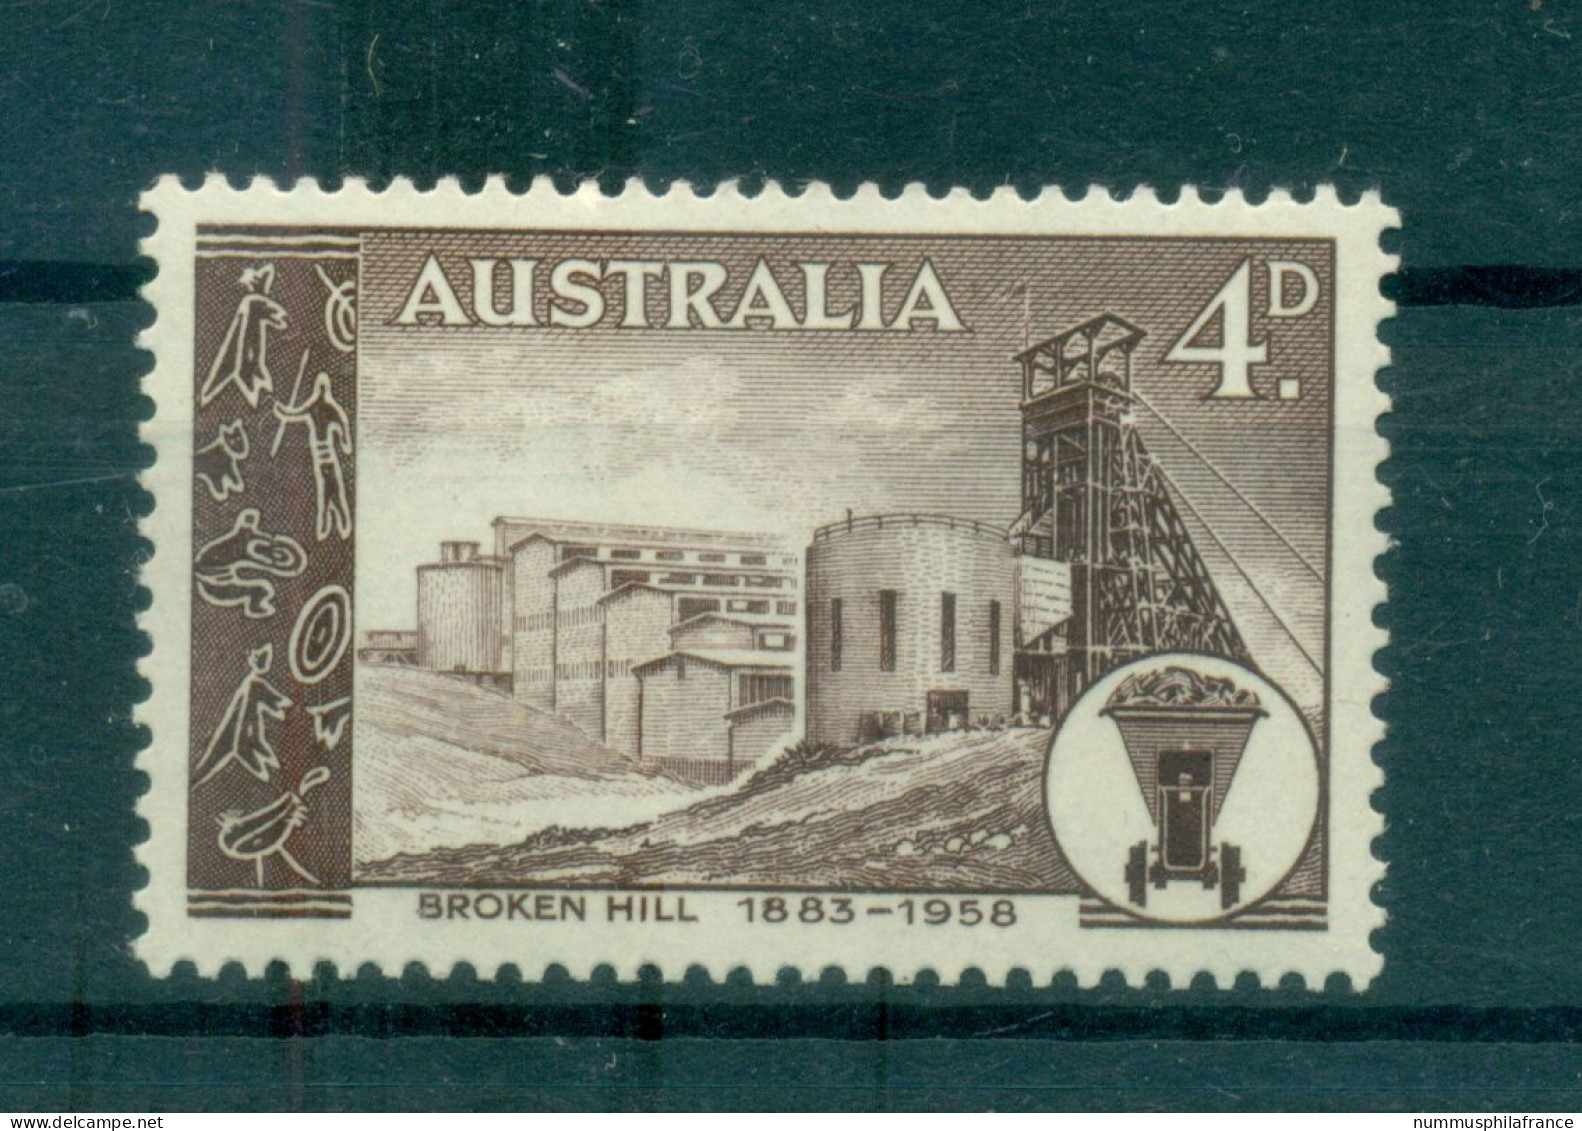 Australie 1958 - Y & T N. 246 - Broken Hill (Michel N. 285) - Mint Stamps